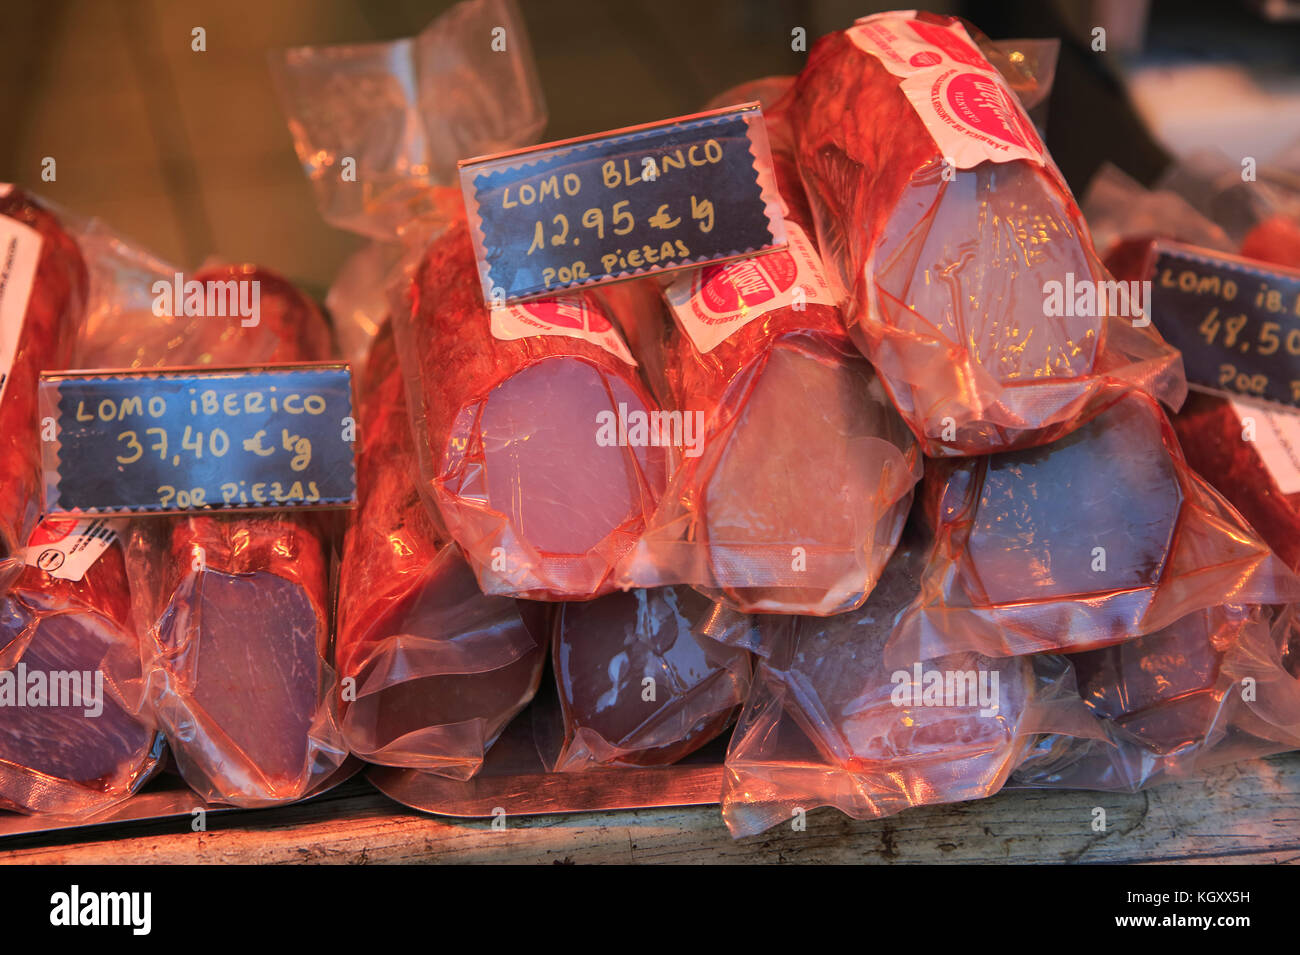 Fleisch shop Metzgerei Fenster anzuzeigen, das Stadtzentrum von Madrid, Spanien Stockfoto